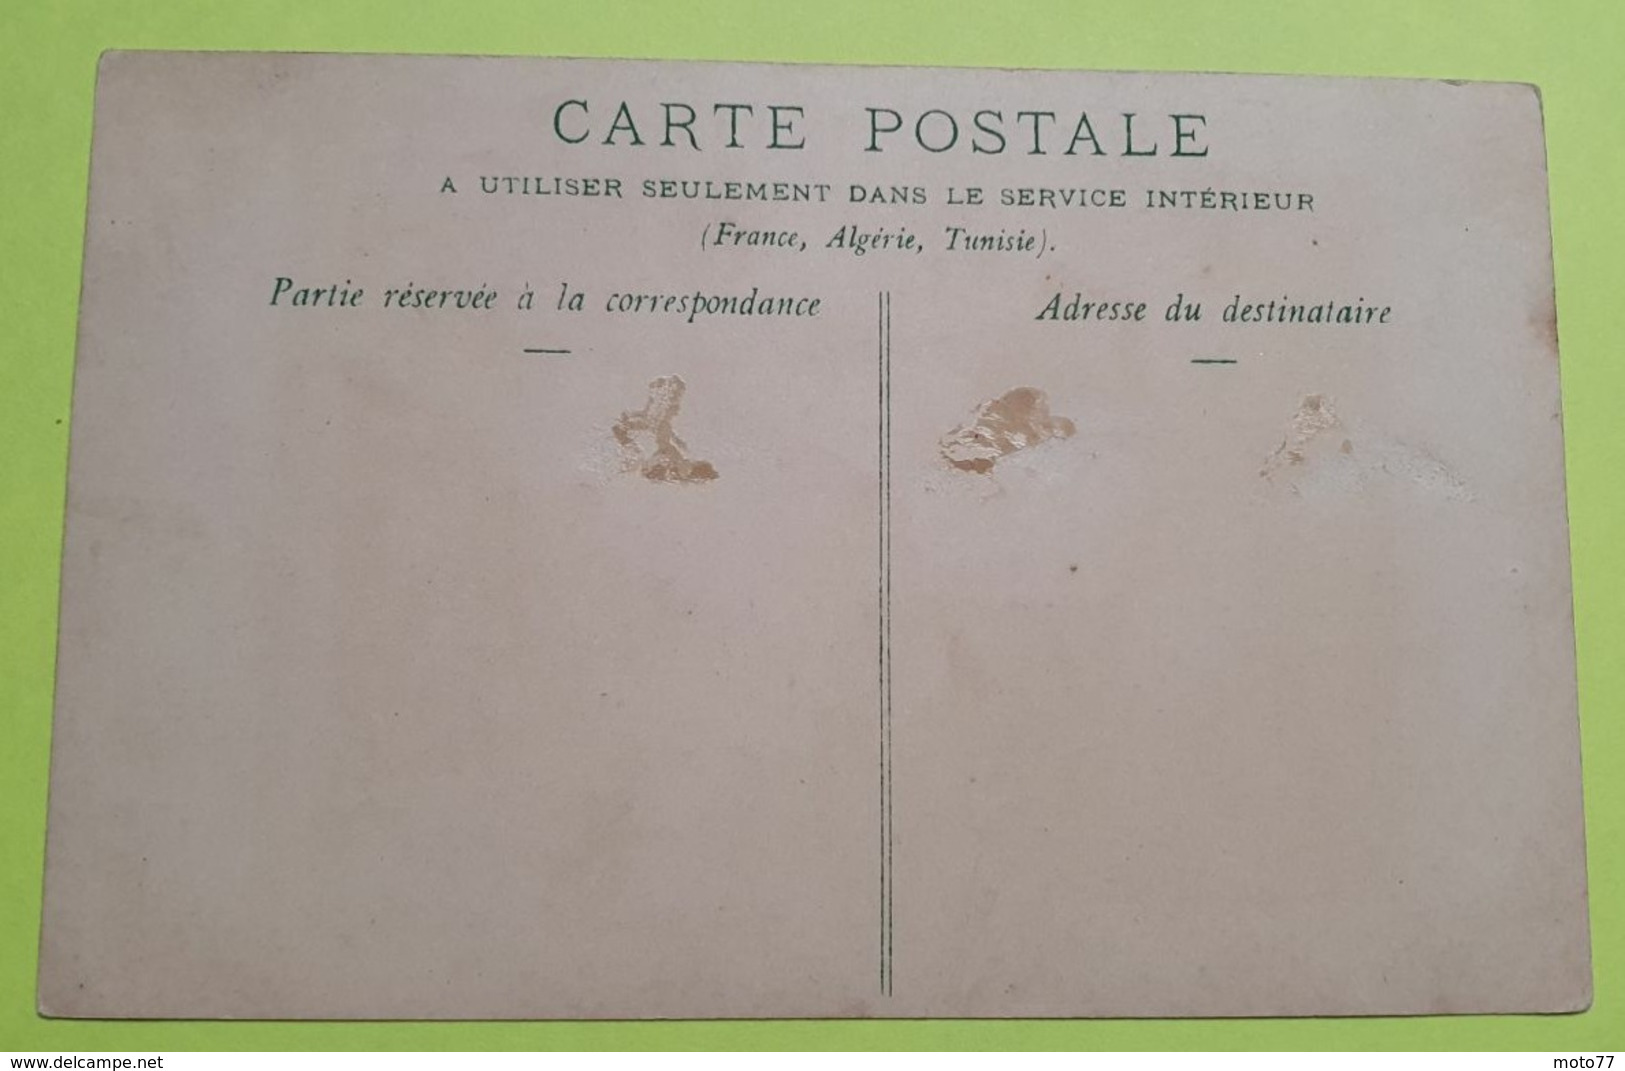 CPA Carte Postale Chromo  - Année Pas Visible - De La Série " VERTE " RARE- Usine Lefèvre Utile - Biscuits LU / Lot 39.9 - Lu